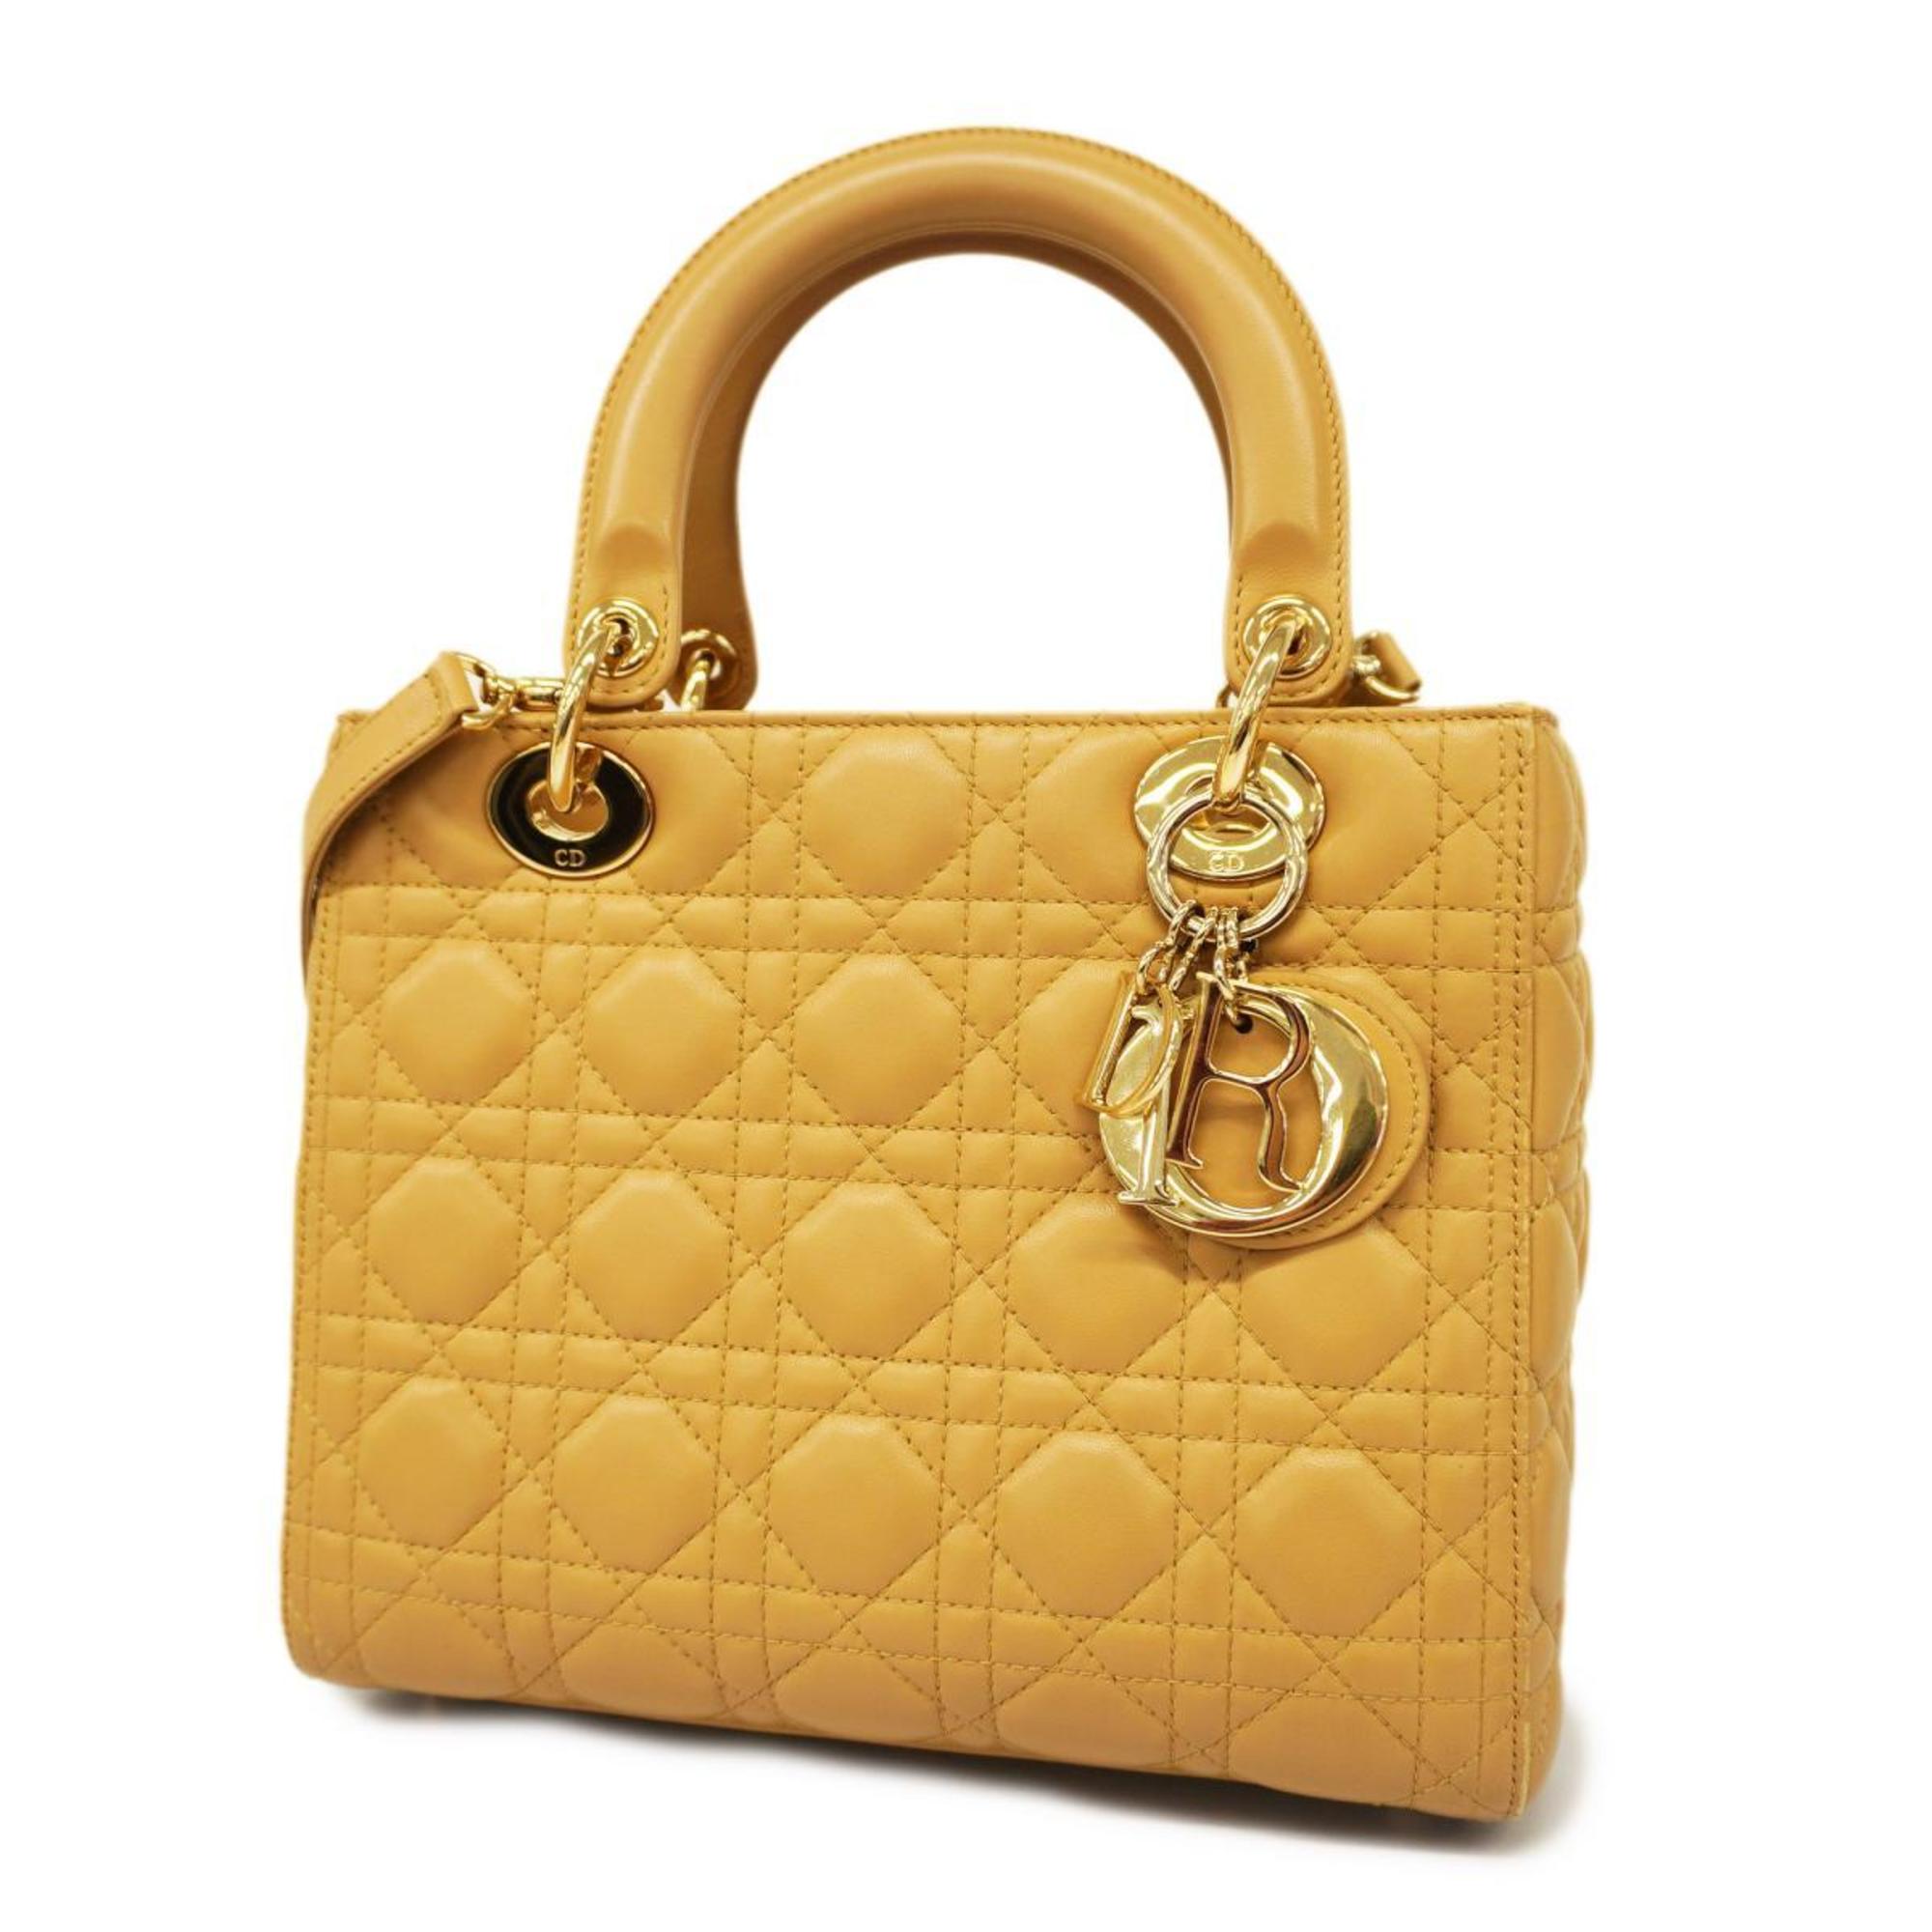 28,969円Christian Dior クリスチャンディオール カナージュ ハンドバッグ